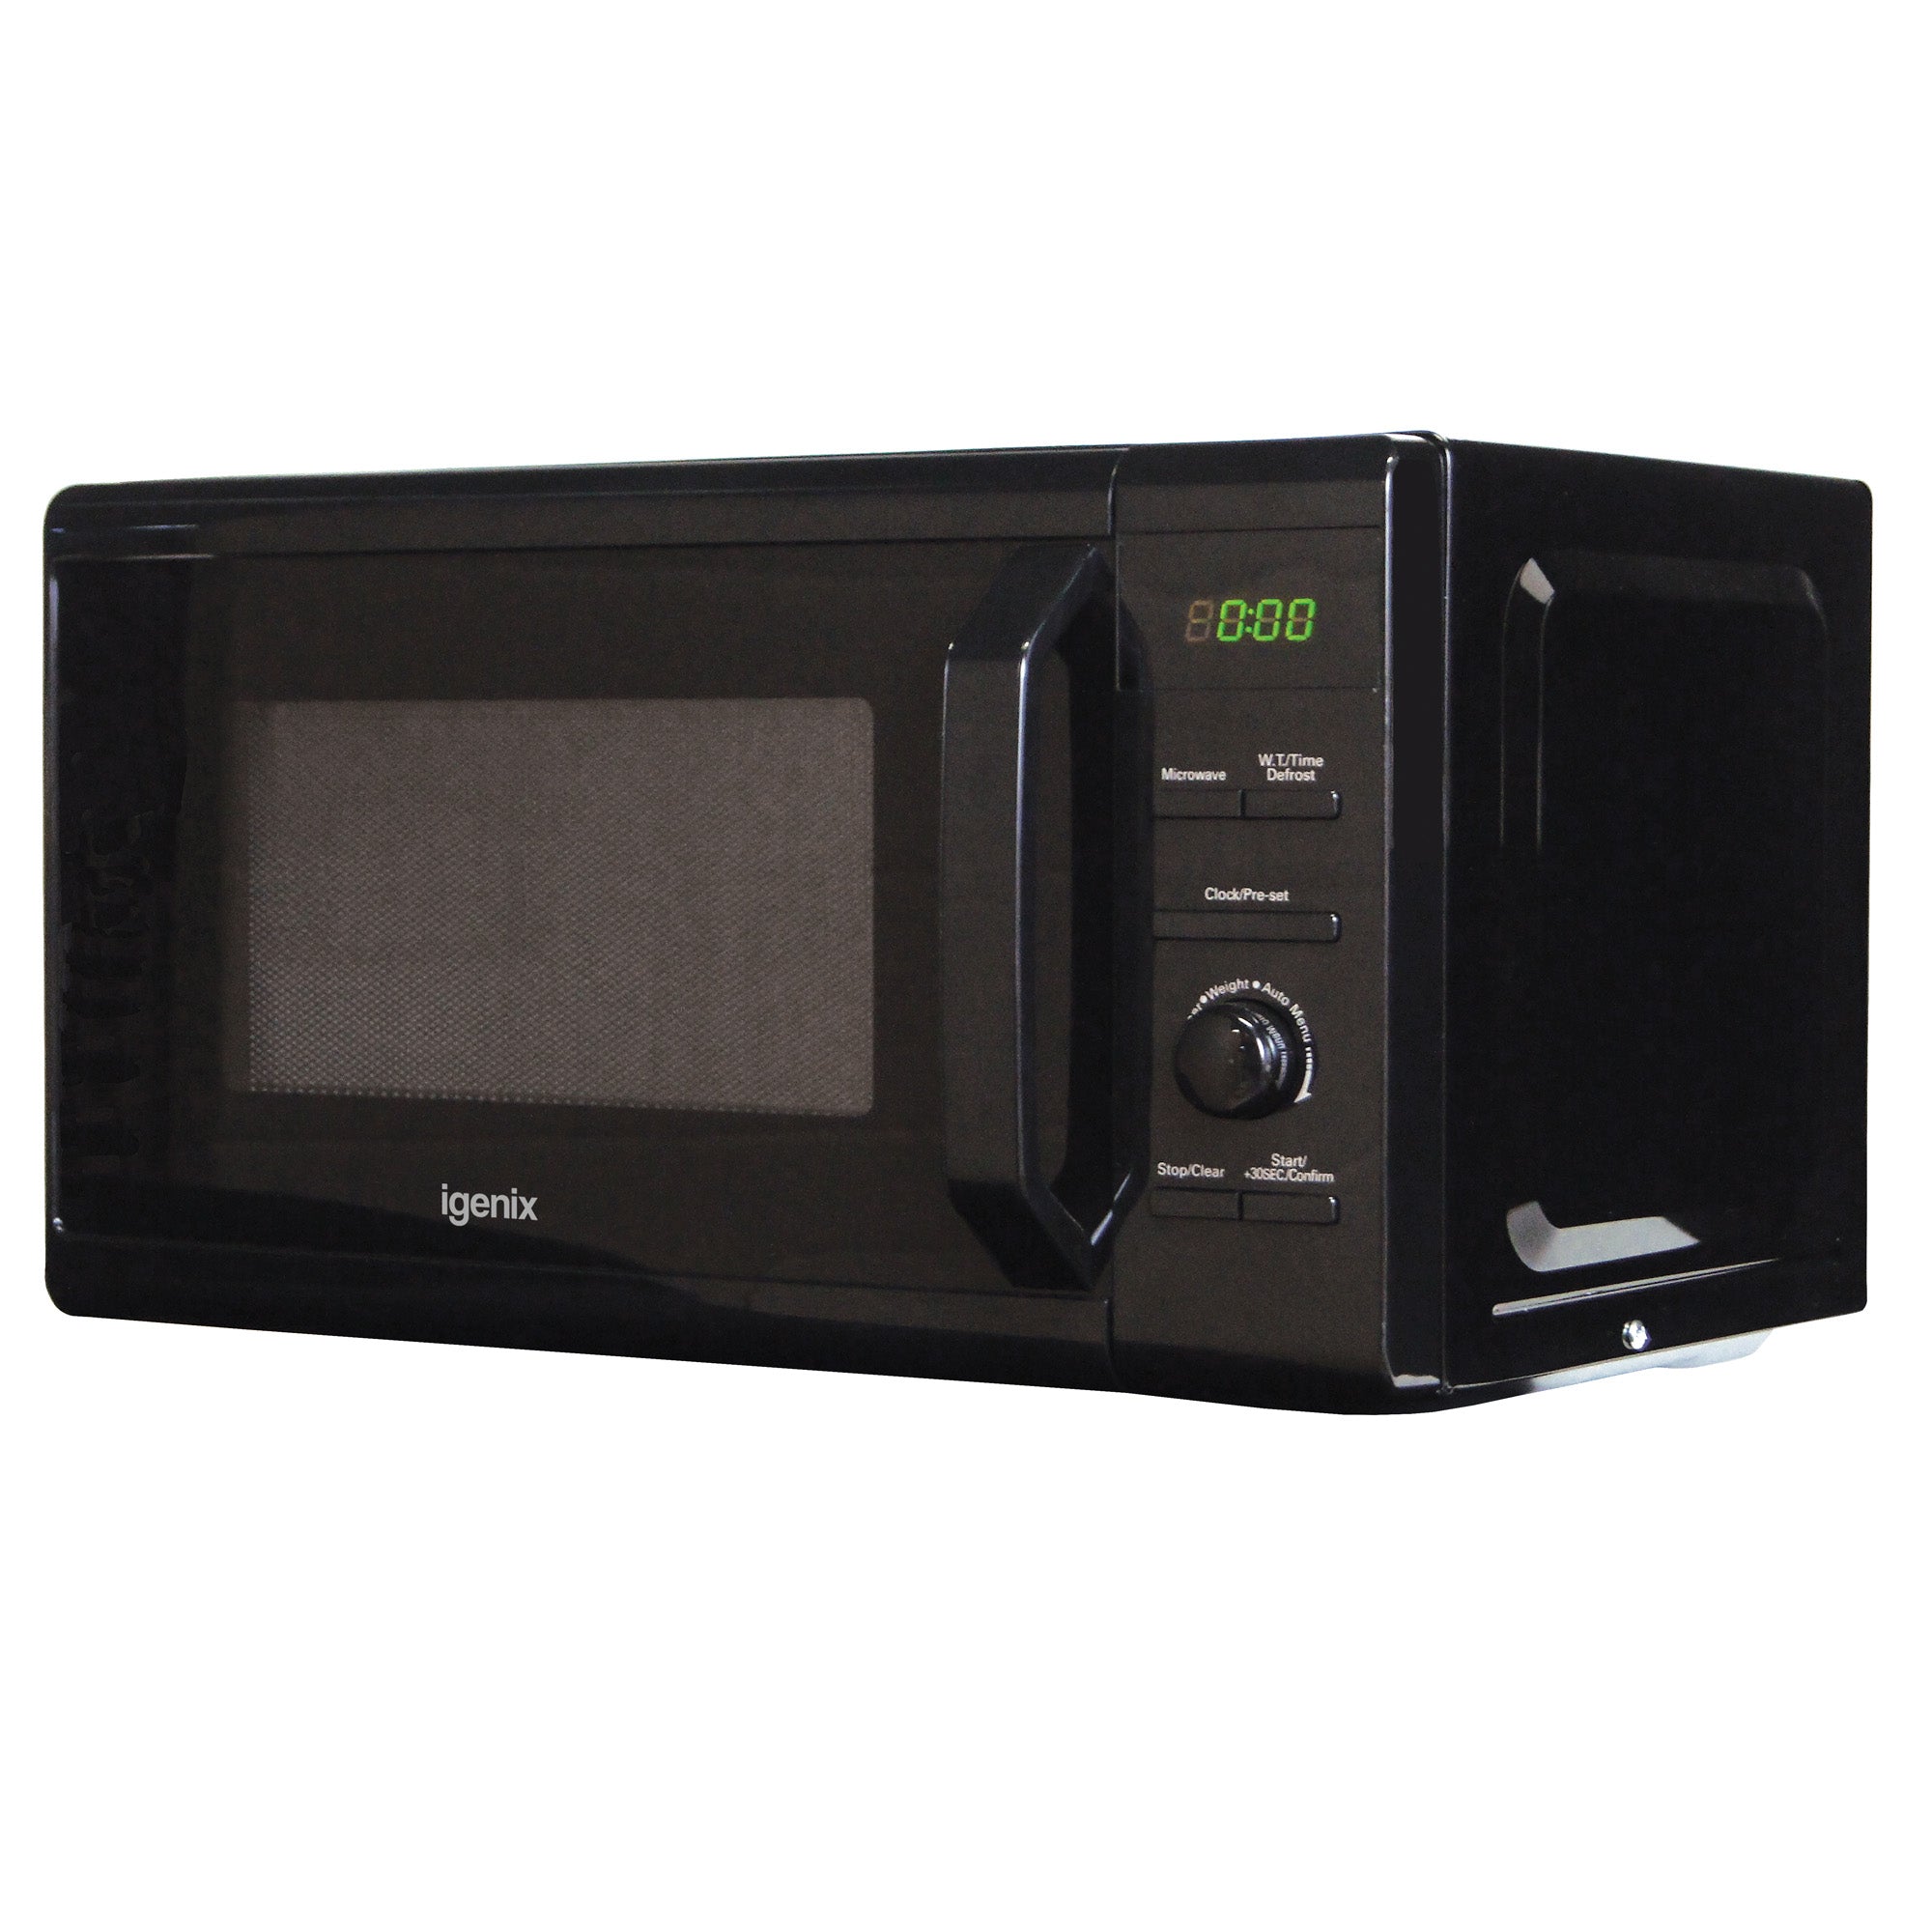 Digital Microwave, 20 Litre, 8 Cooking Settings, 800W, Black